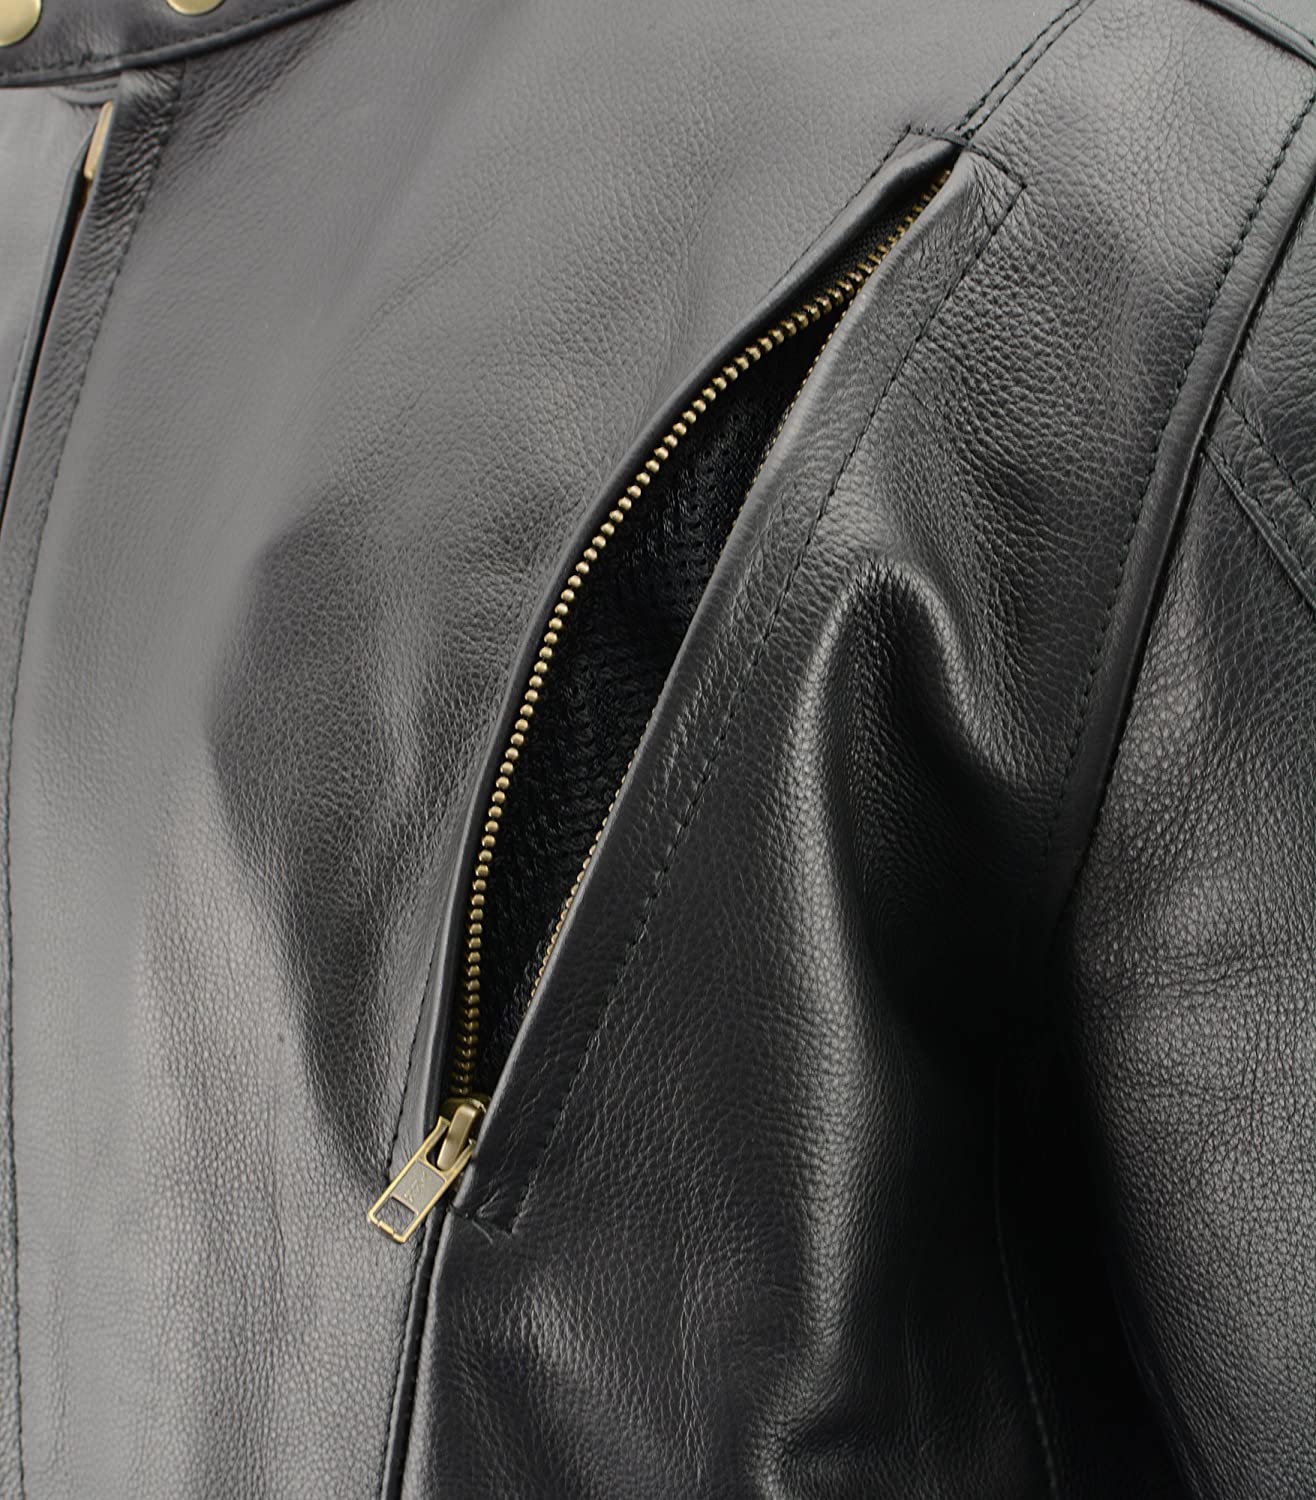 M-Boss Motorcycle Apparel BOS11510 Men’s ‘Speed’ Black Cowhide Motorcycle Leather Jacket